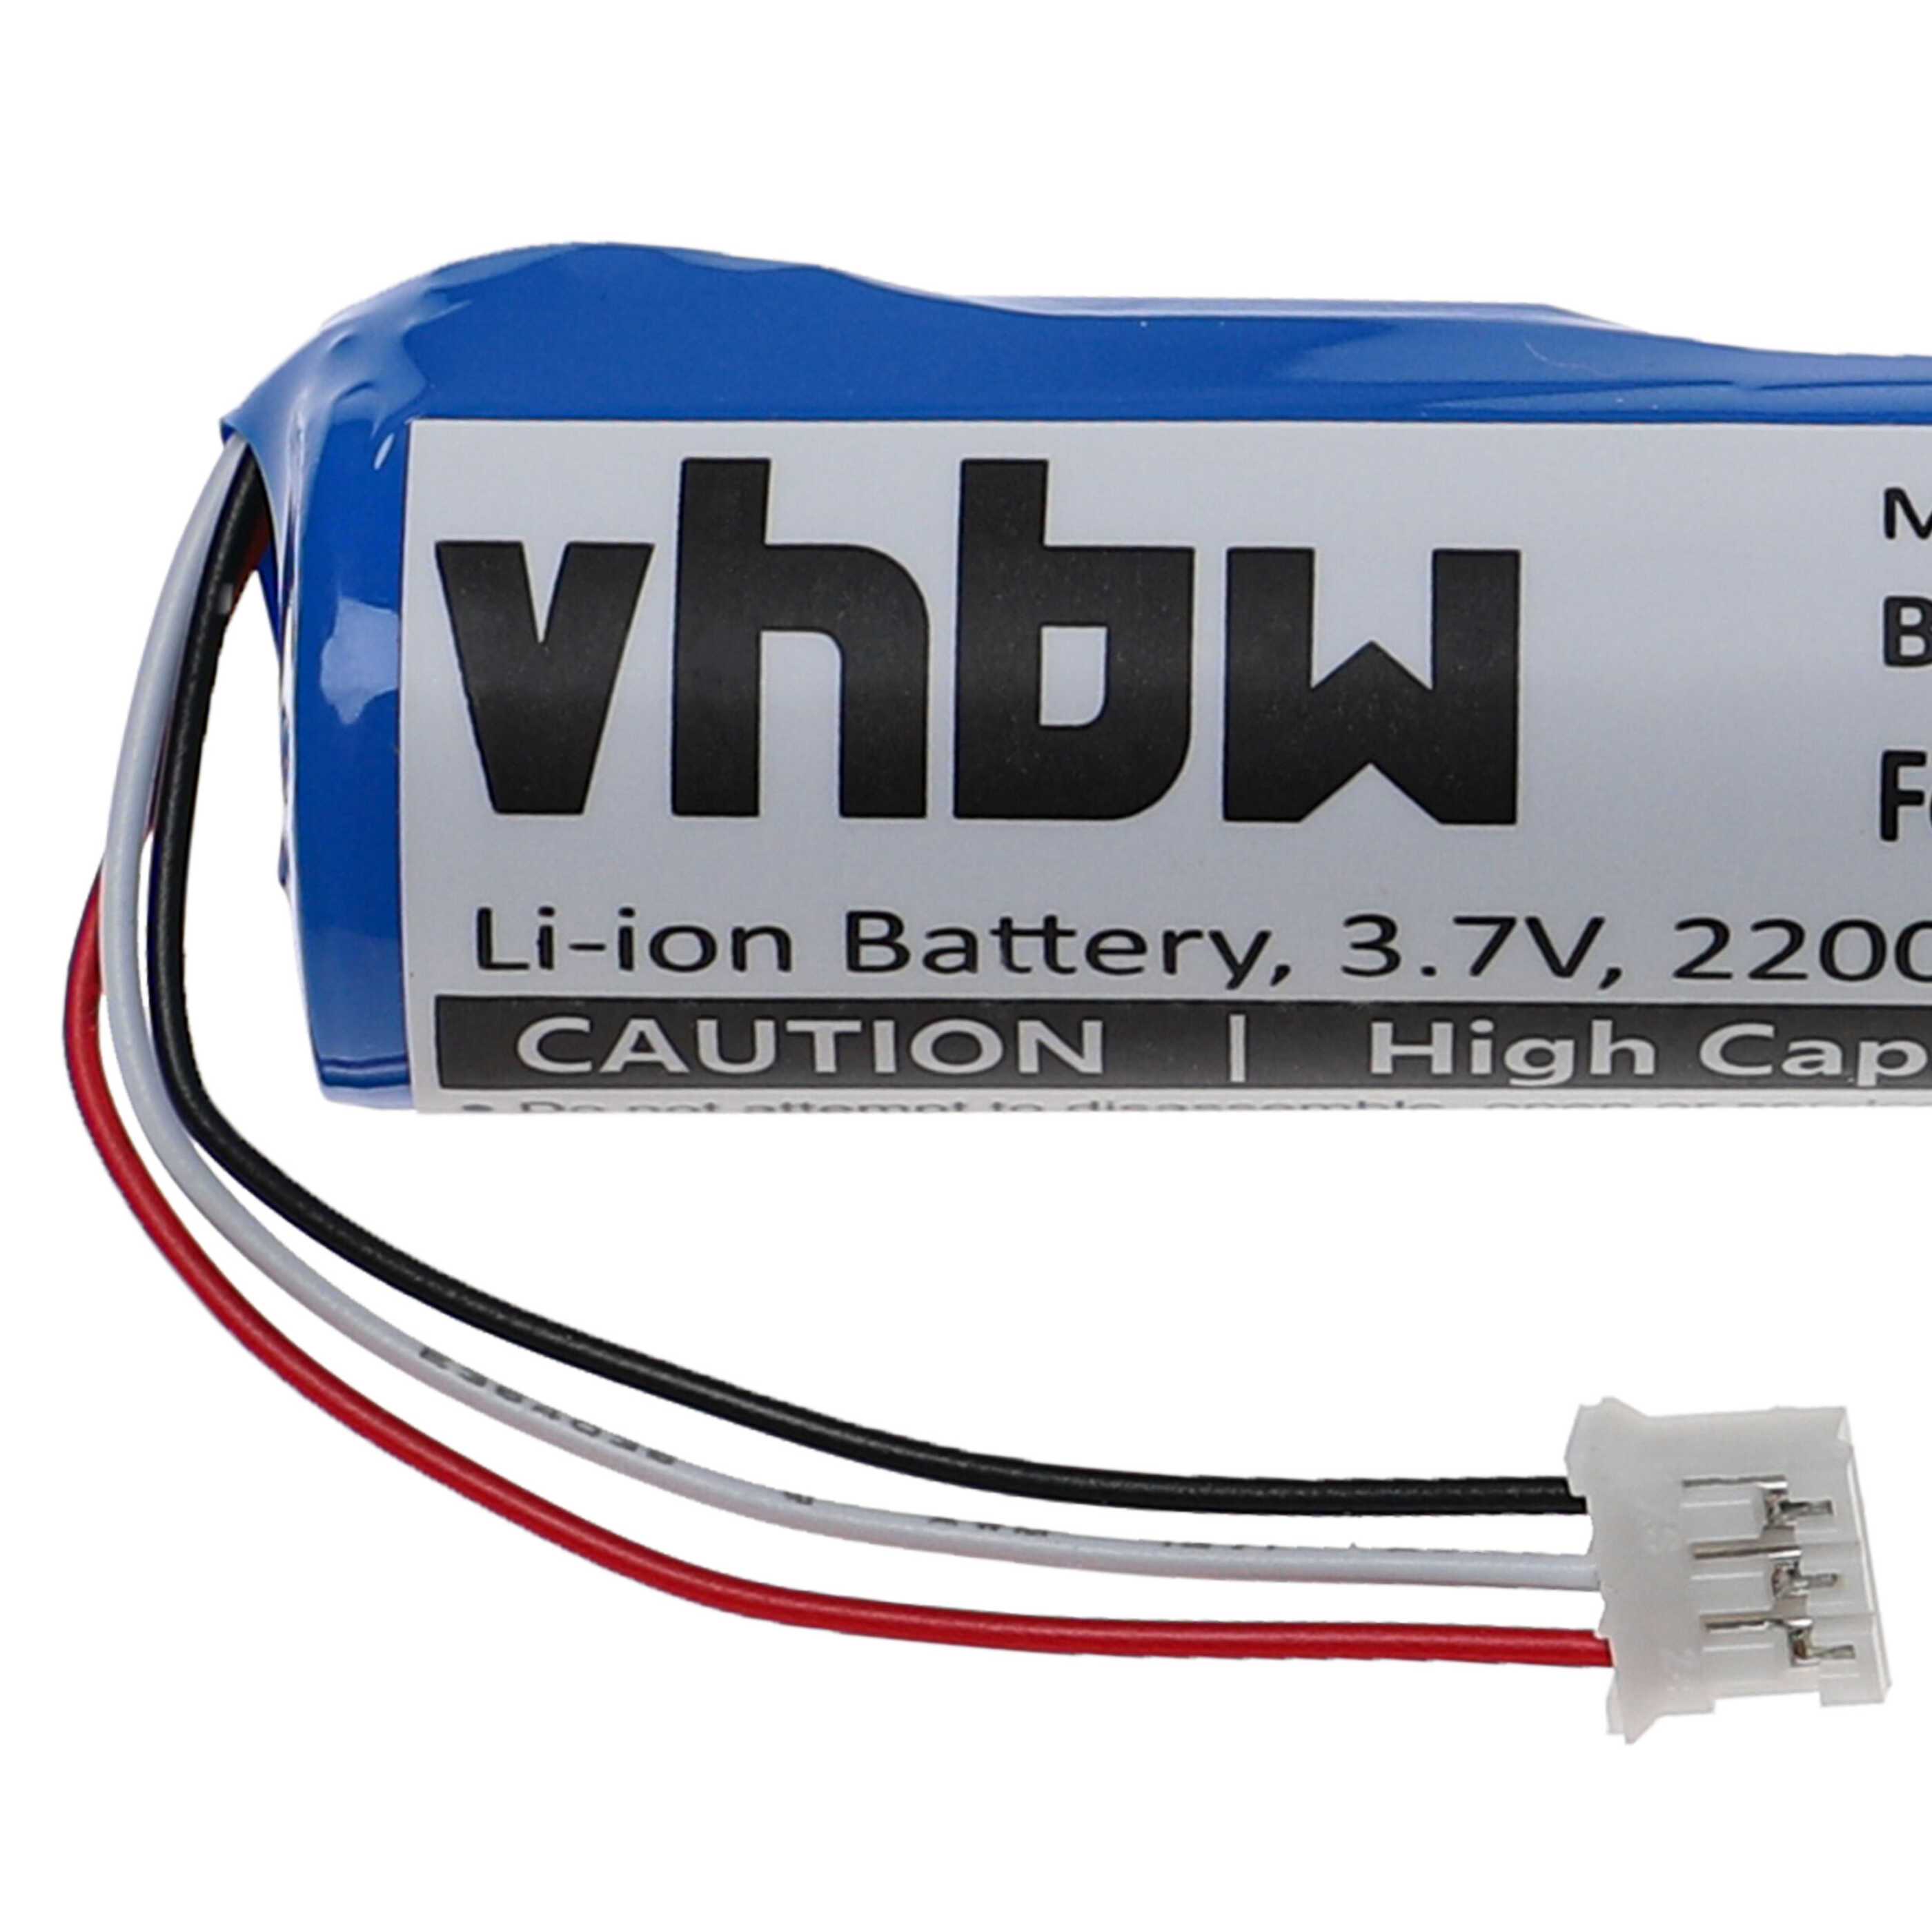 Batterie remplace Philips PB9600 pour télécommande - 2200mAh 3,7V Li-ion